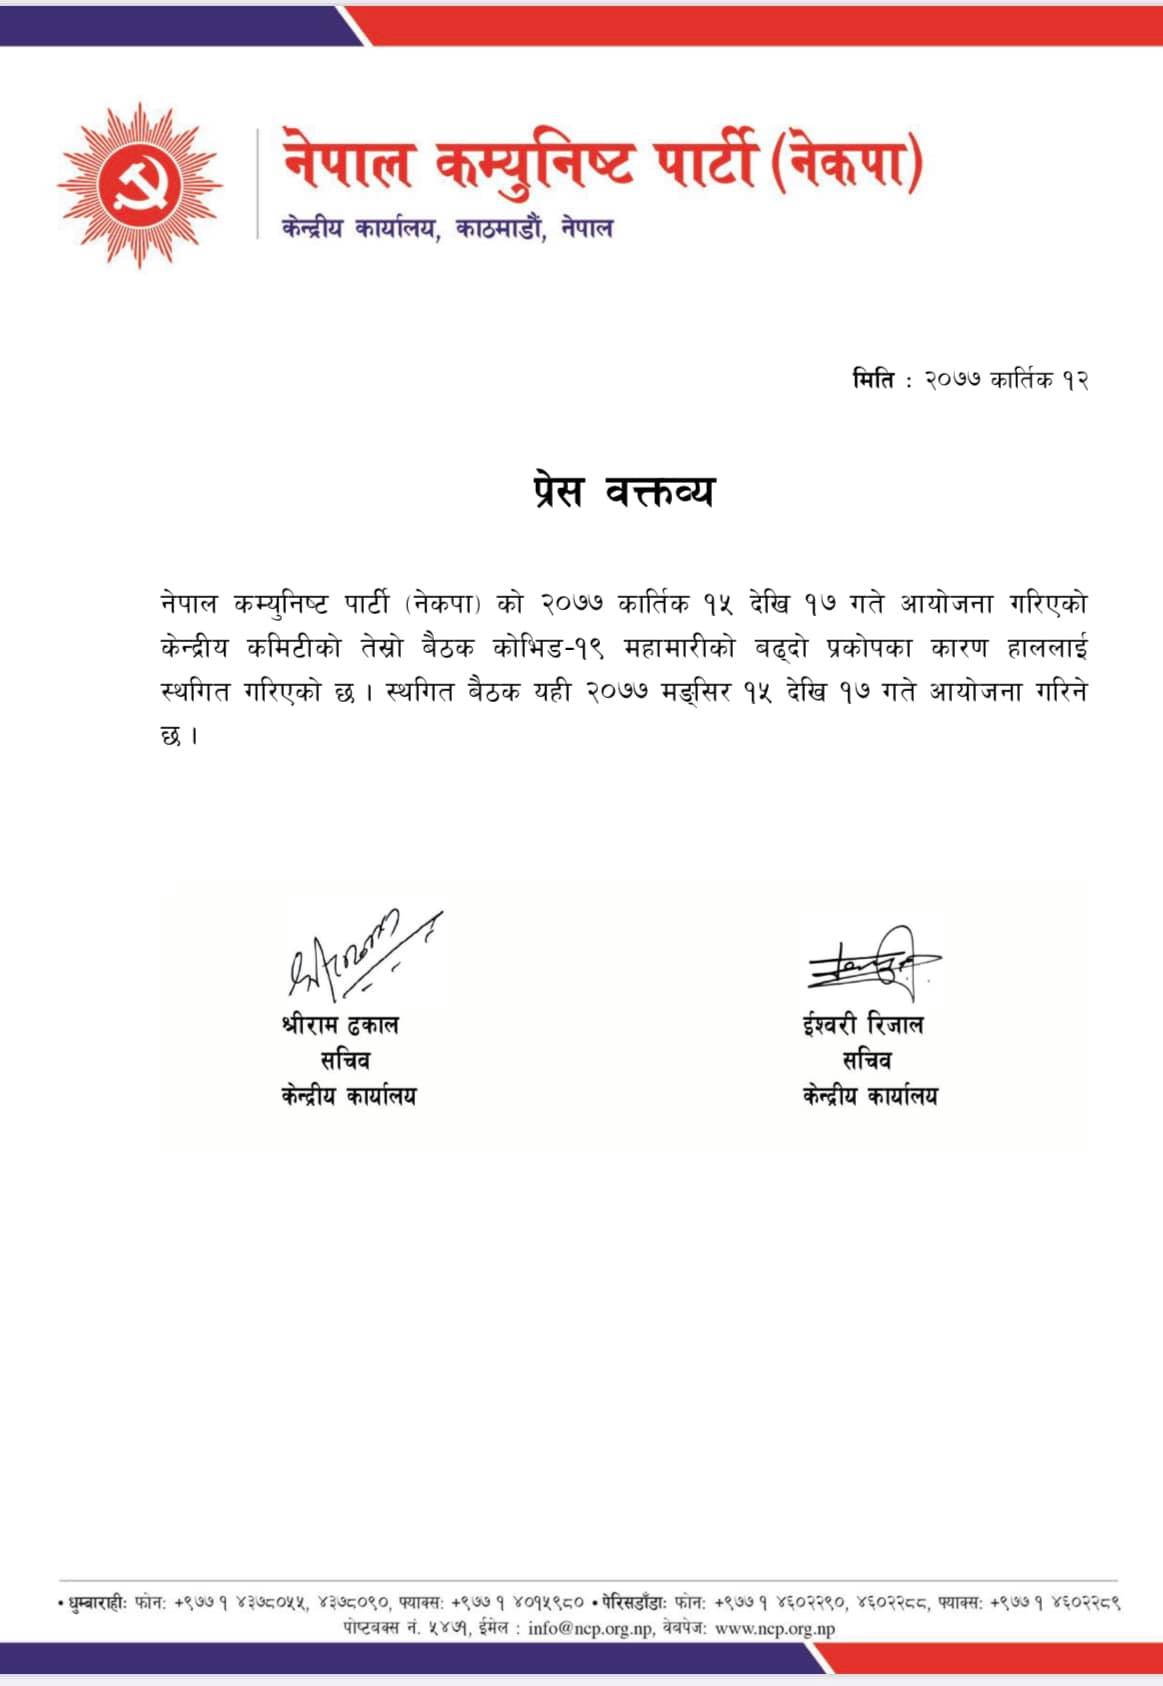 नेपाल कम्युनिस्ट पार्टीको (नेकपा) केन्द्रीय कमिटी बैठक स्थगित